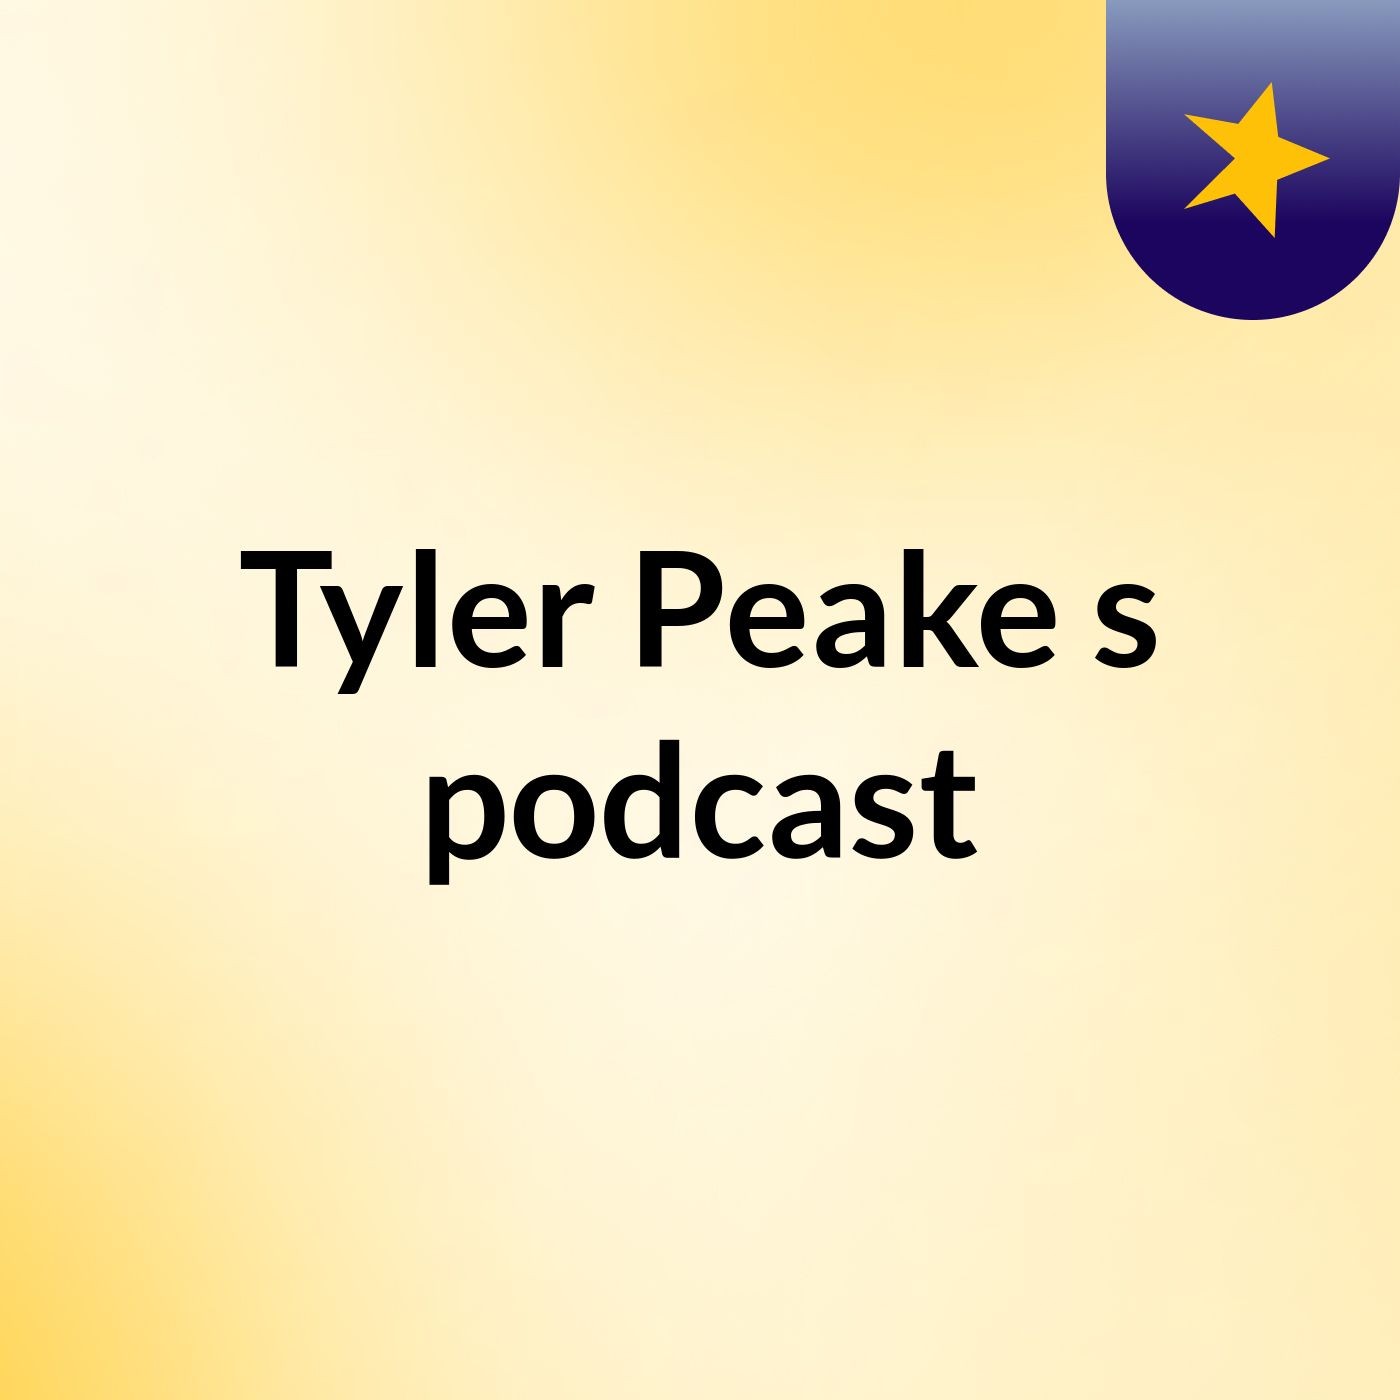 Tyler Peake's podcast